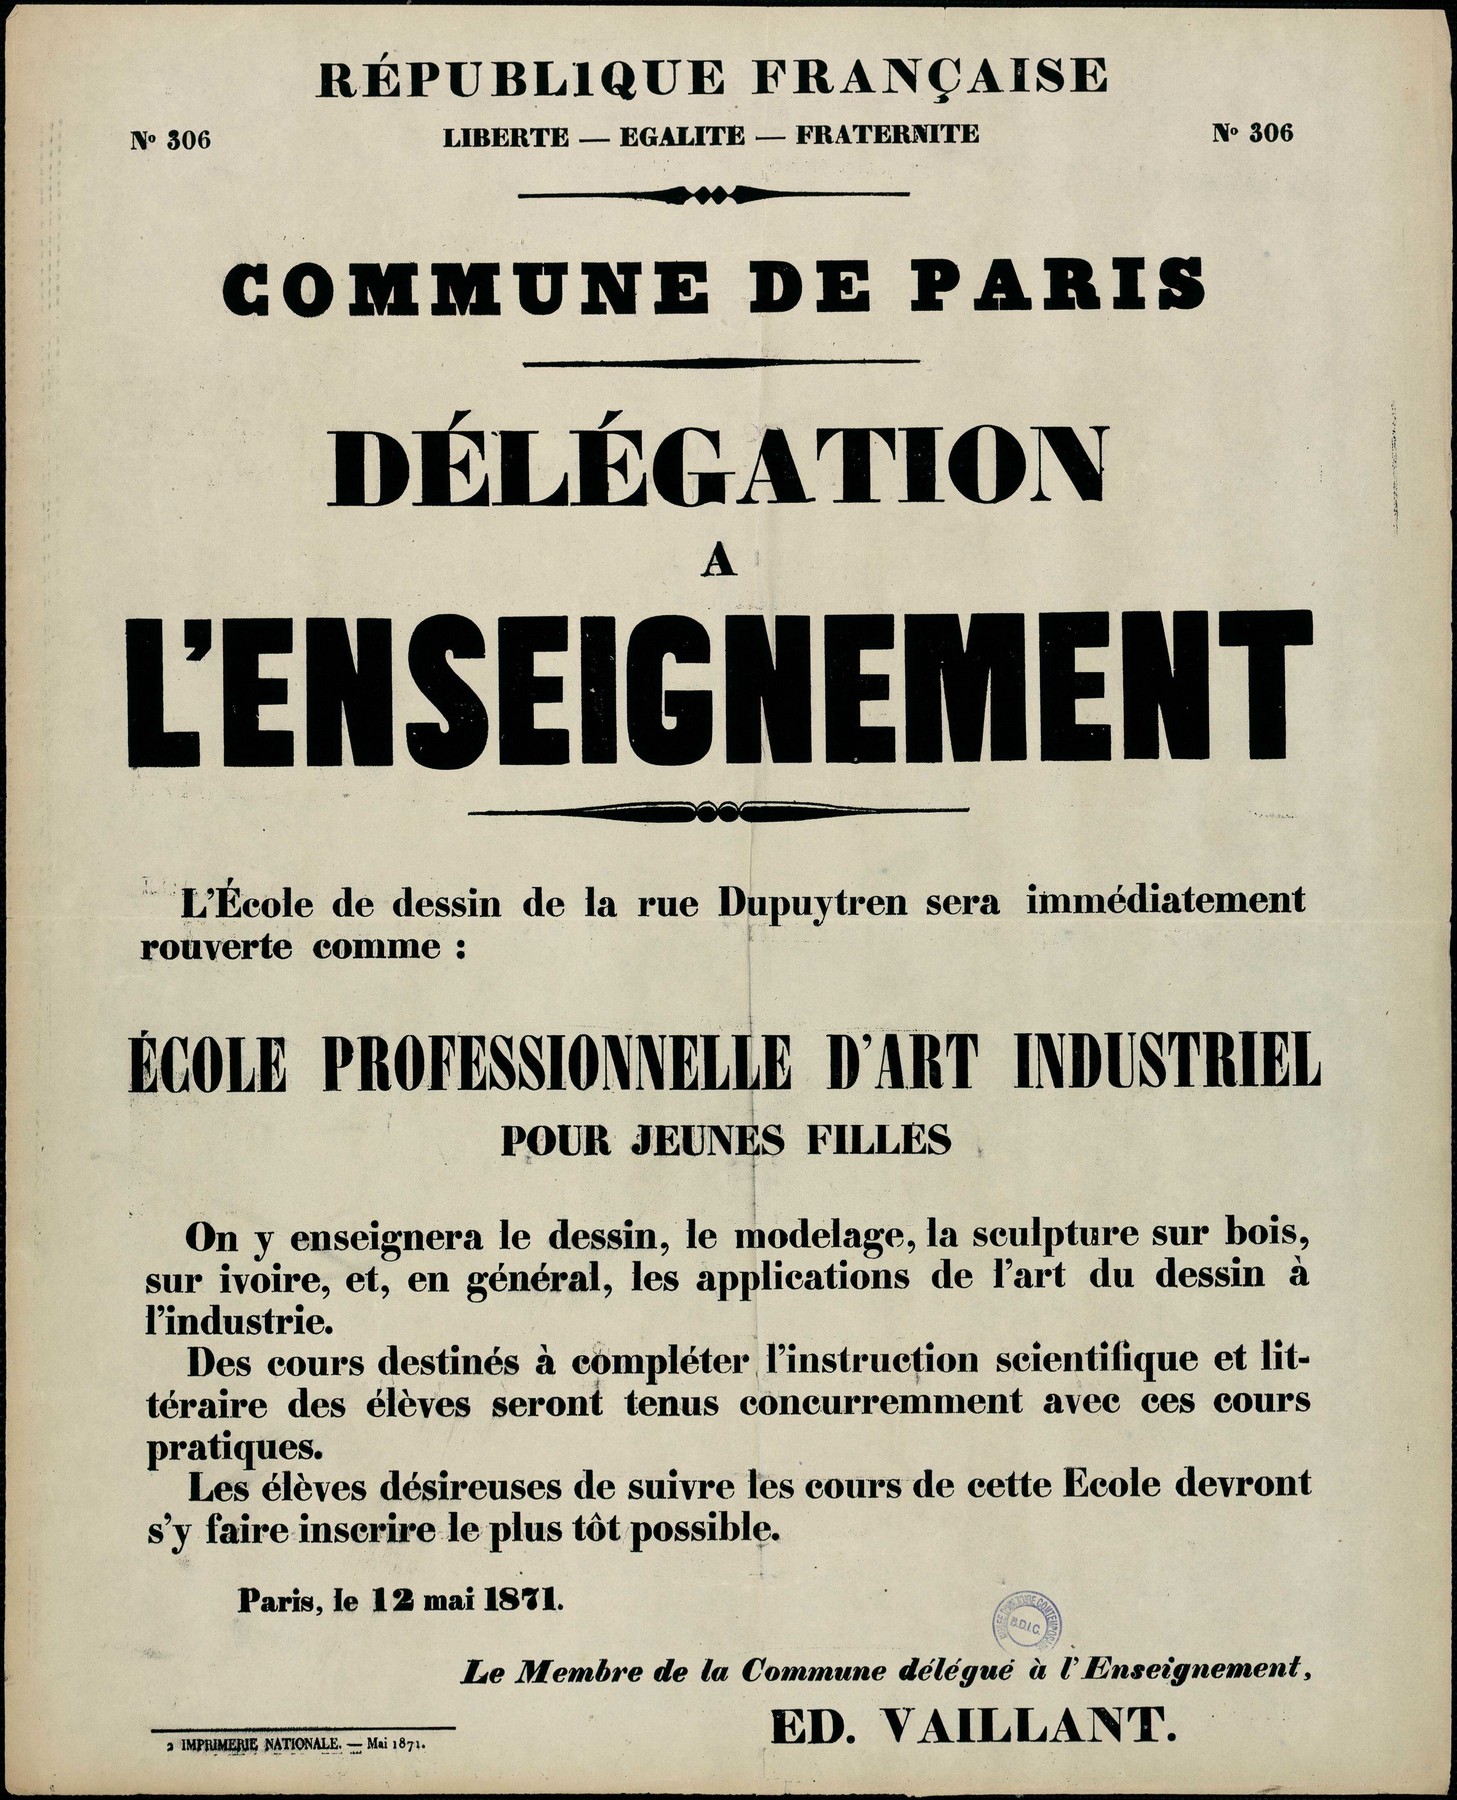 Affiche de la Commune de Paris N° 306 du 12 mai 1871 - Réouverture de l'école professionnelle pour jeunes filles de la rue Dupuytren (Source : argonnaute.parisnanterre.fr)